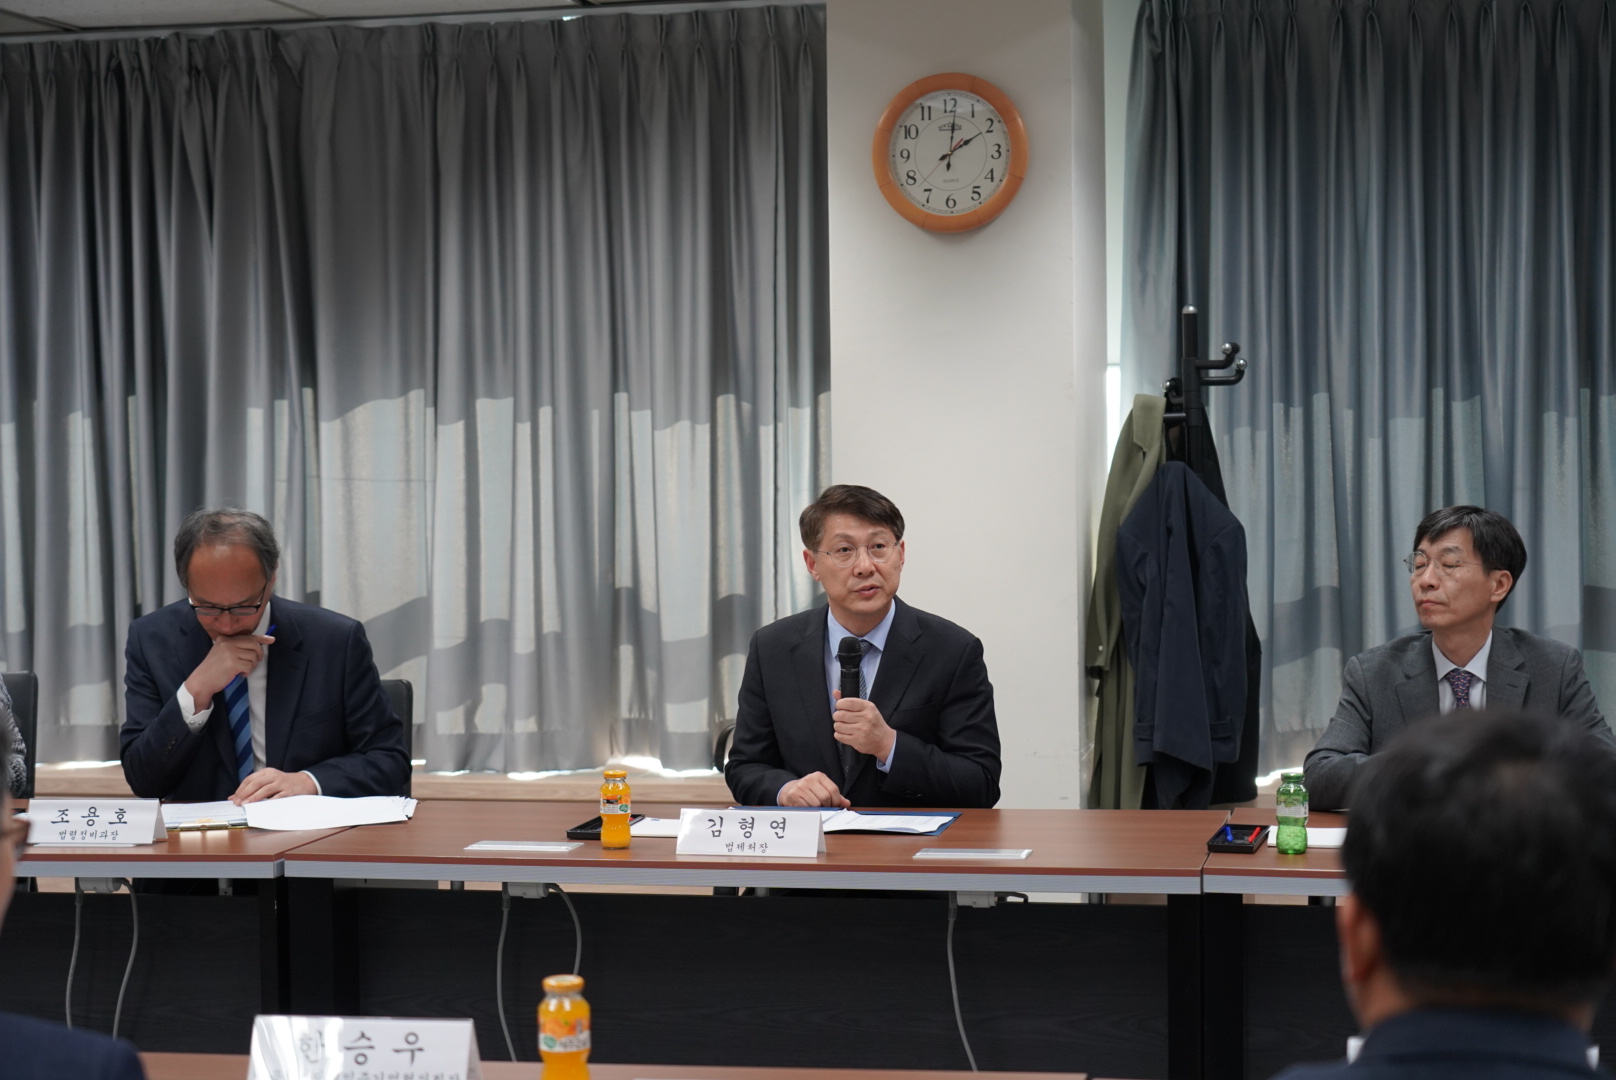 산업단지 입주기업의 개선 의견 수렴을 위한 현장간담회에 참석한 김형연 법제처장 사진2